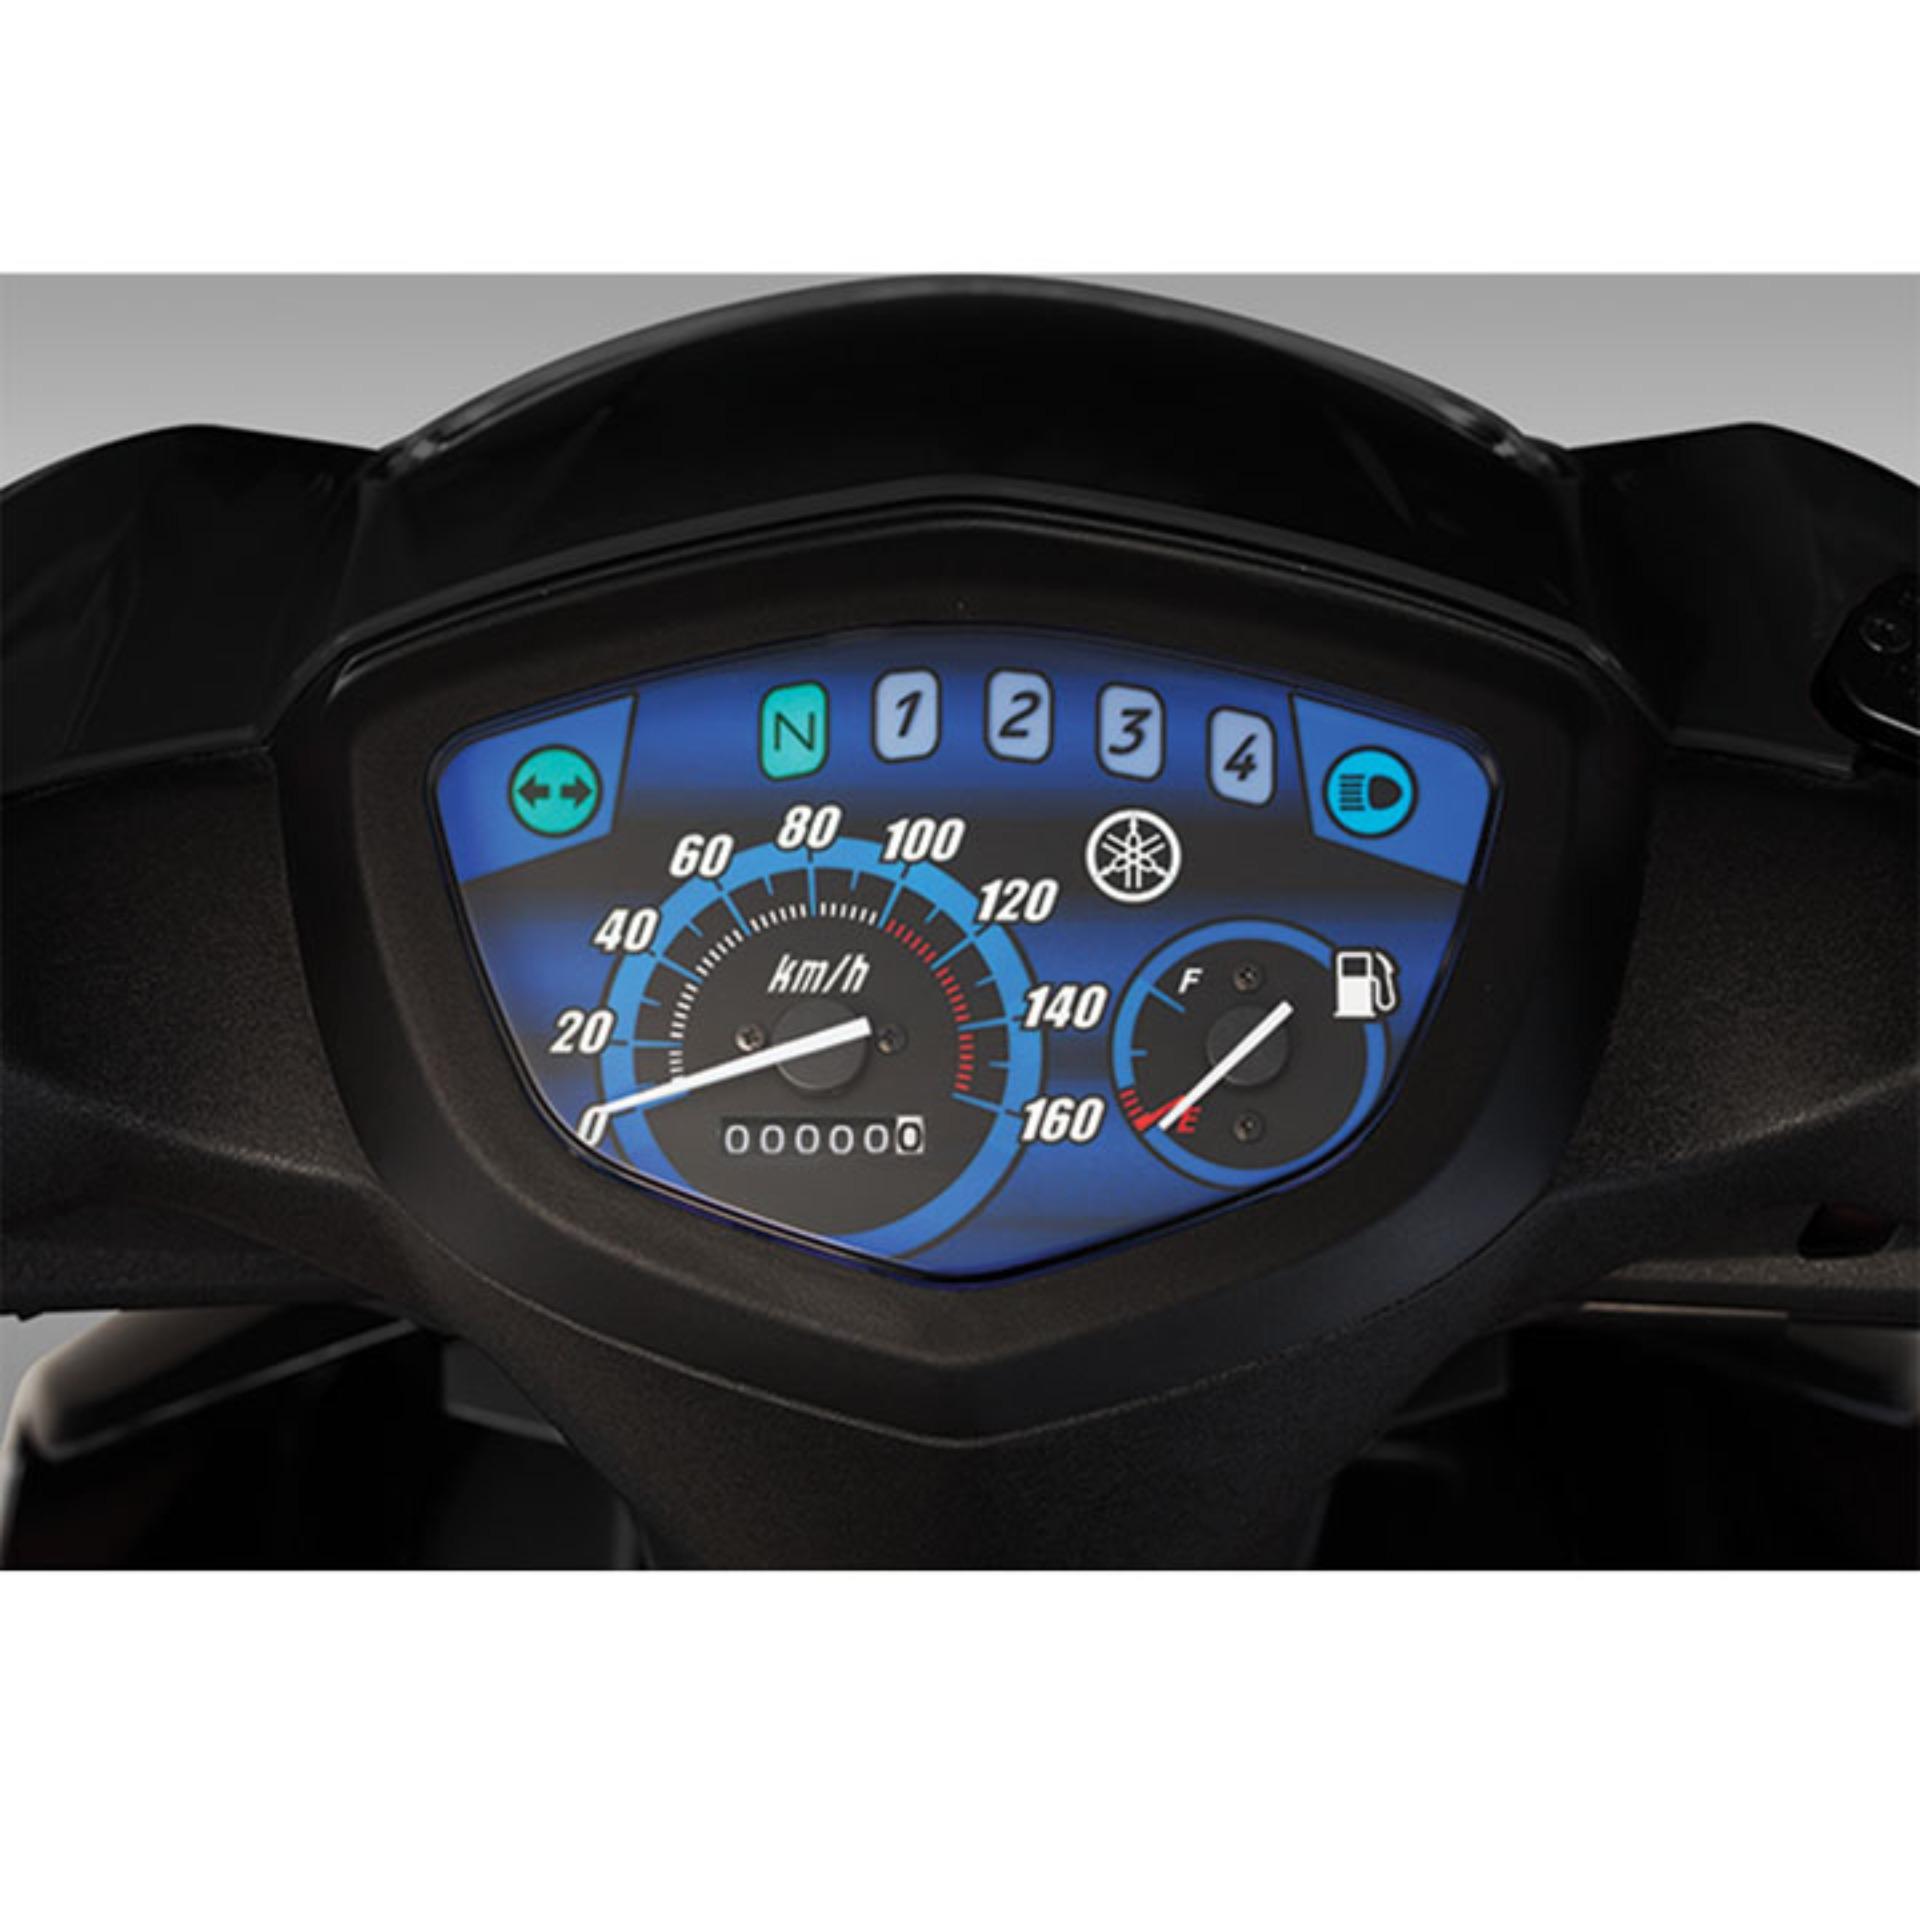 Đồng hồ Yamaha Sirius chính hãng  Giá rẻ  Chất liệu cao cấp